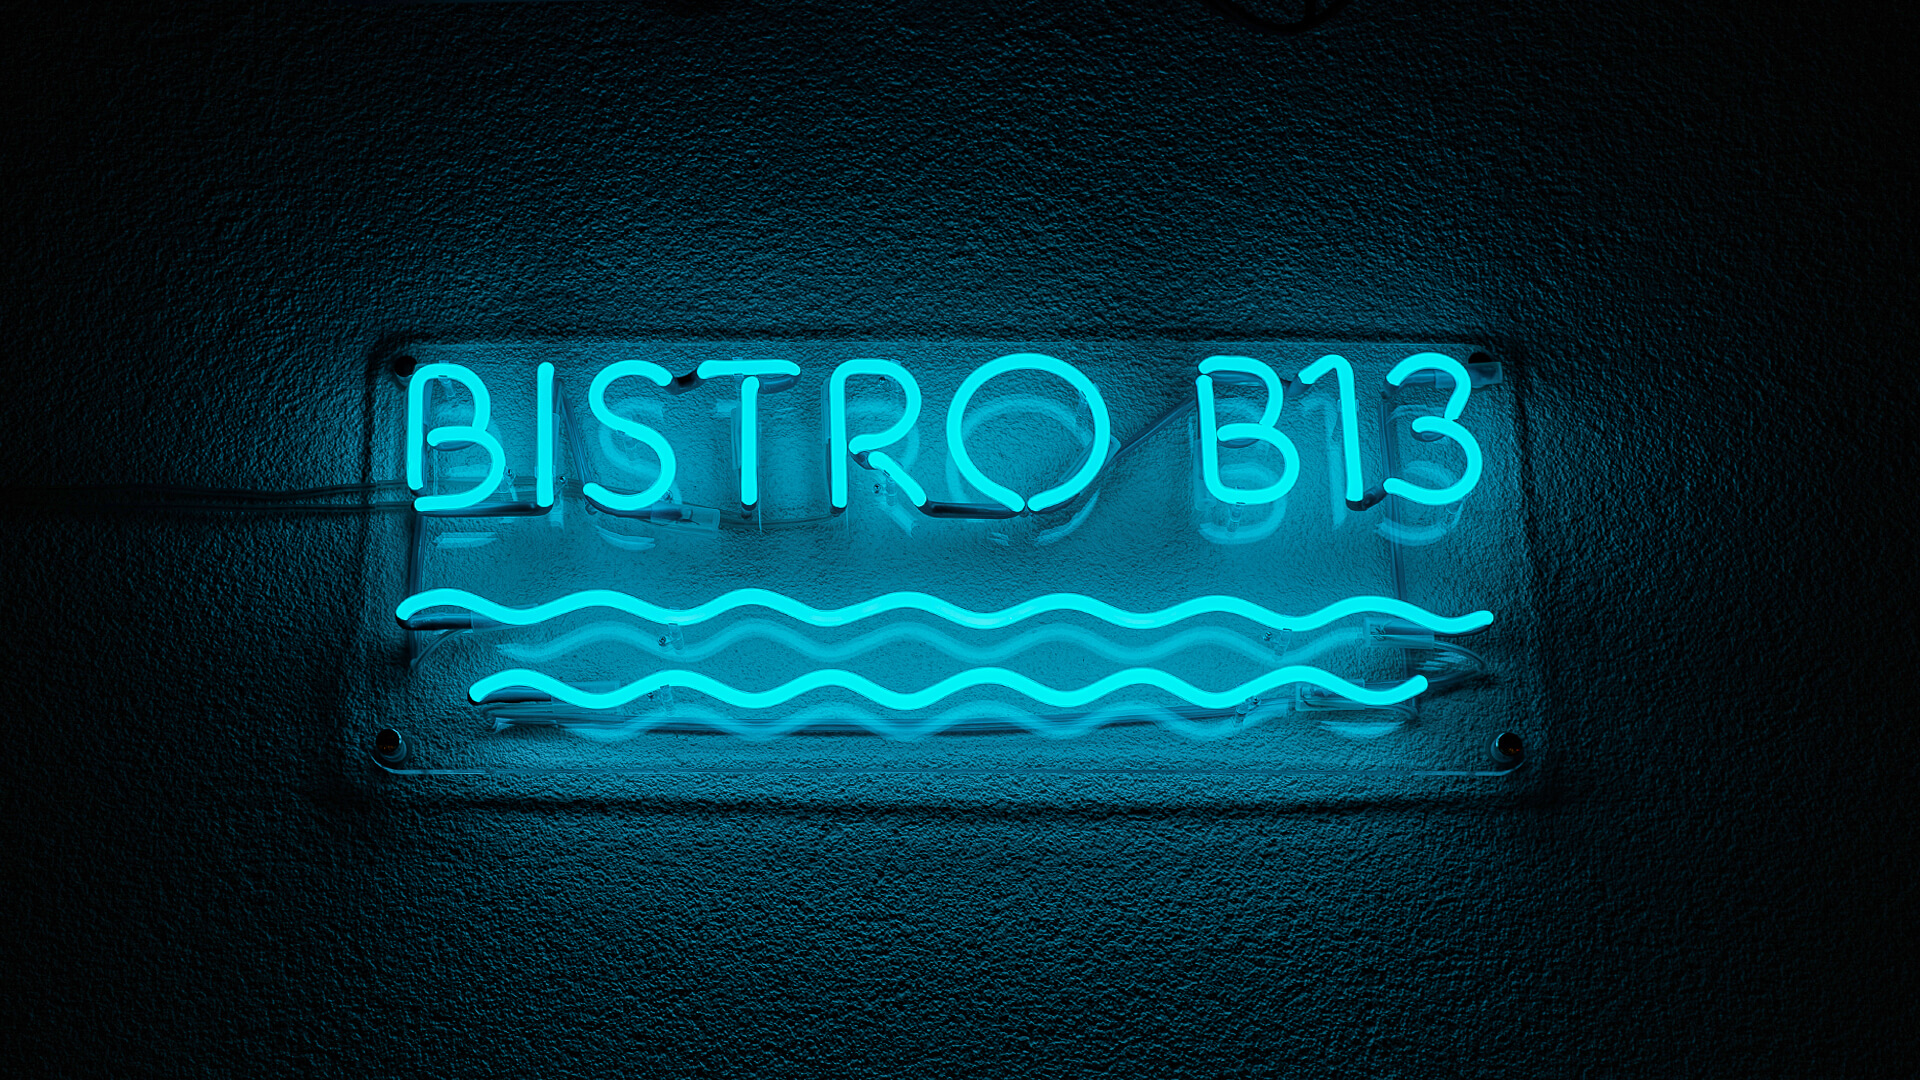 Bistro B13 - Niebieski neon Bistro, z falami pod napisem.